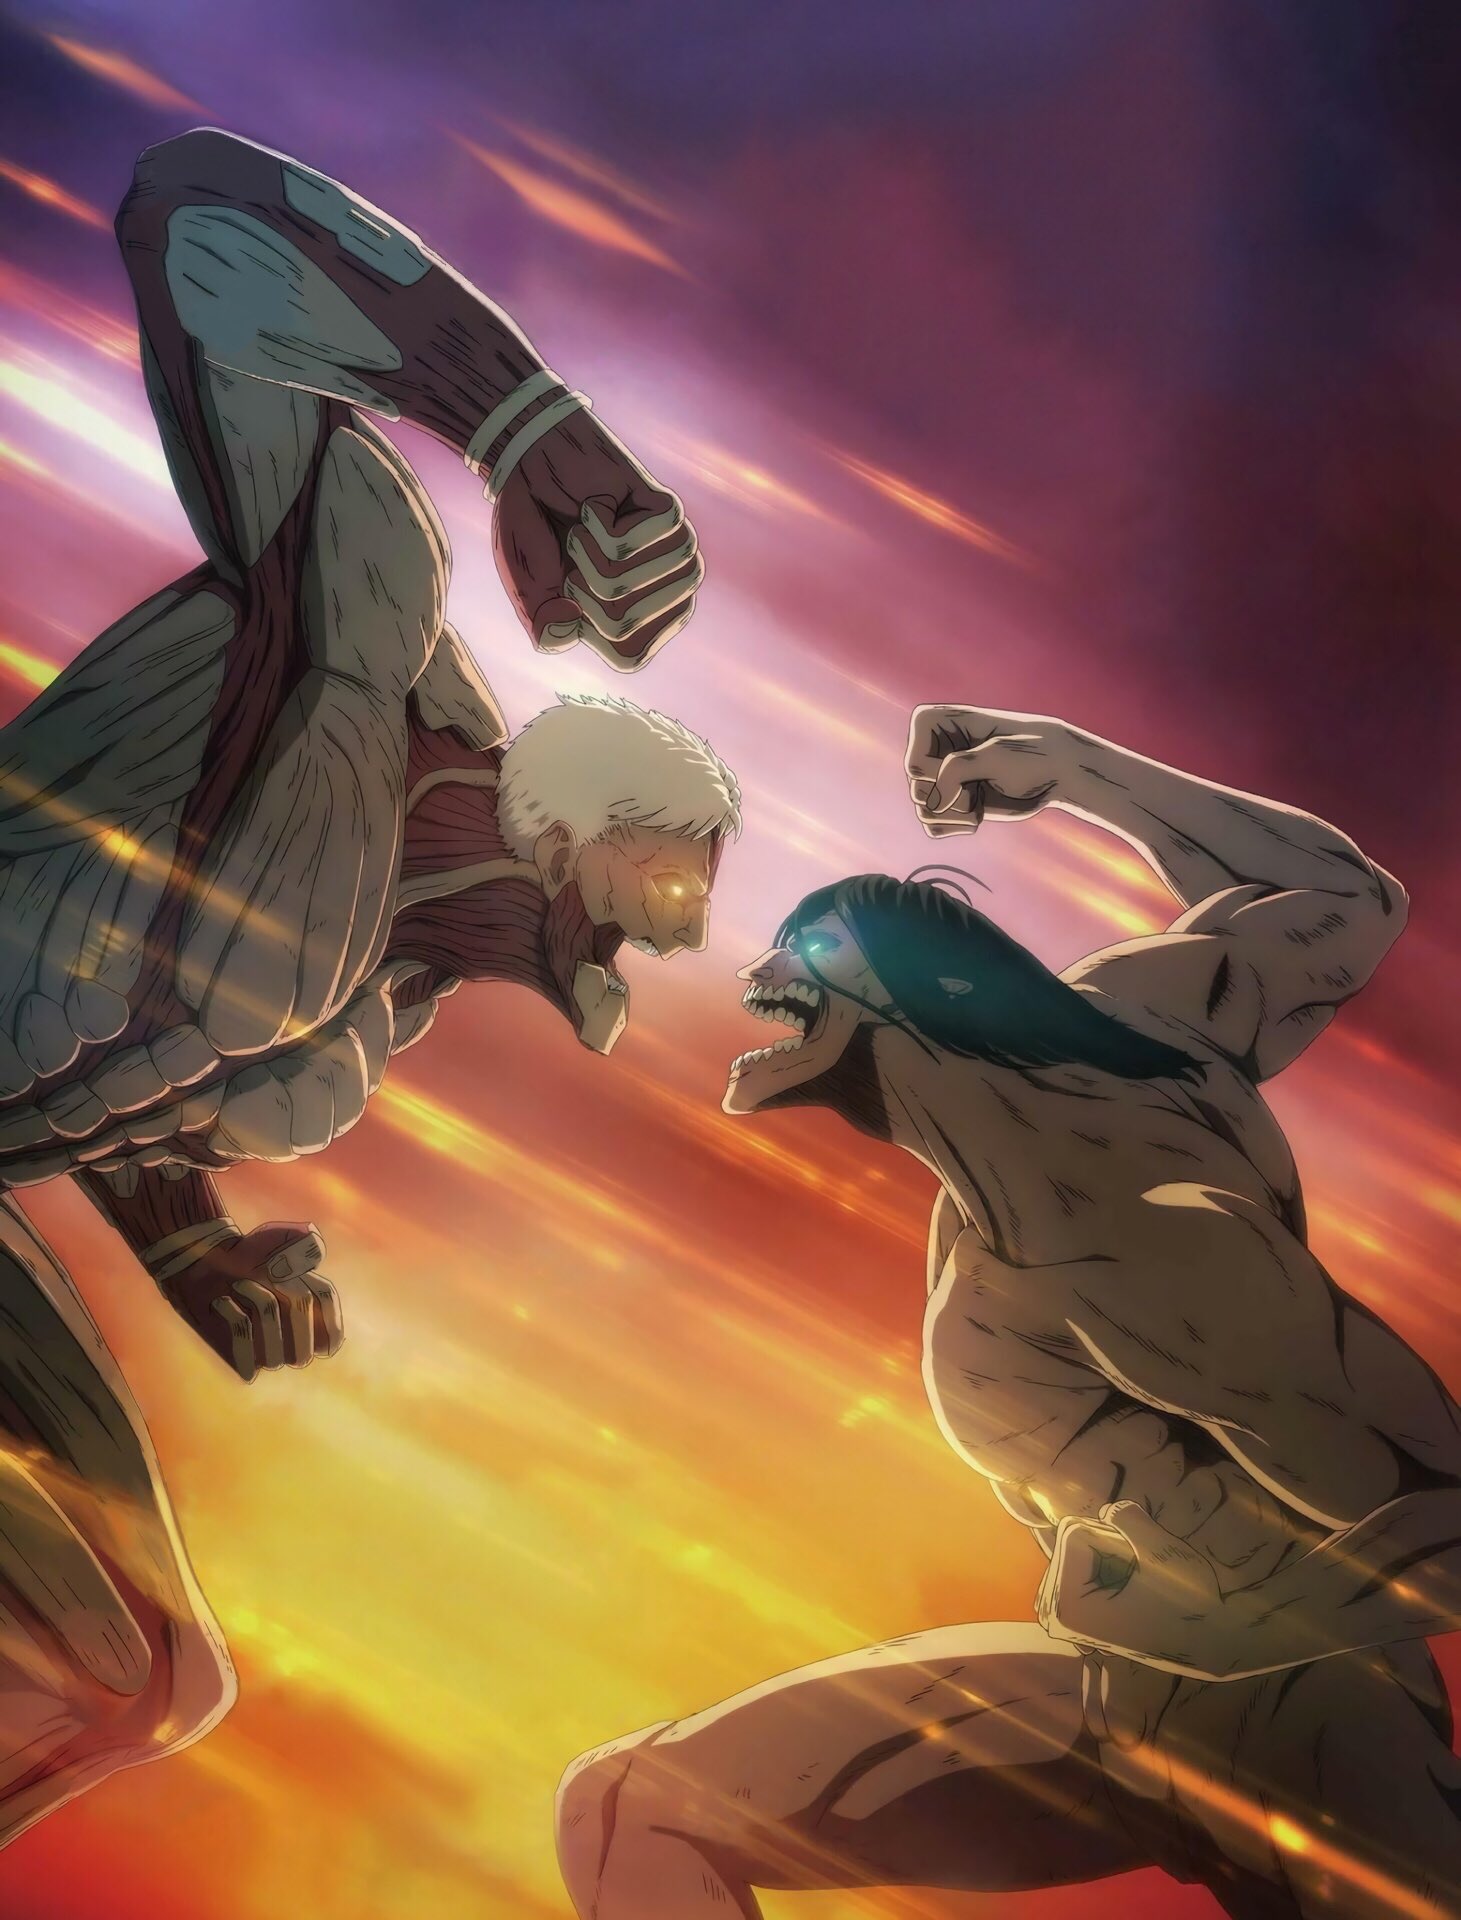 Attack on Titan: The Anime Guide, Attack on Titan Wiki